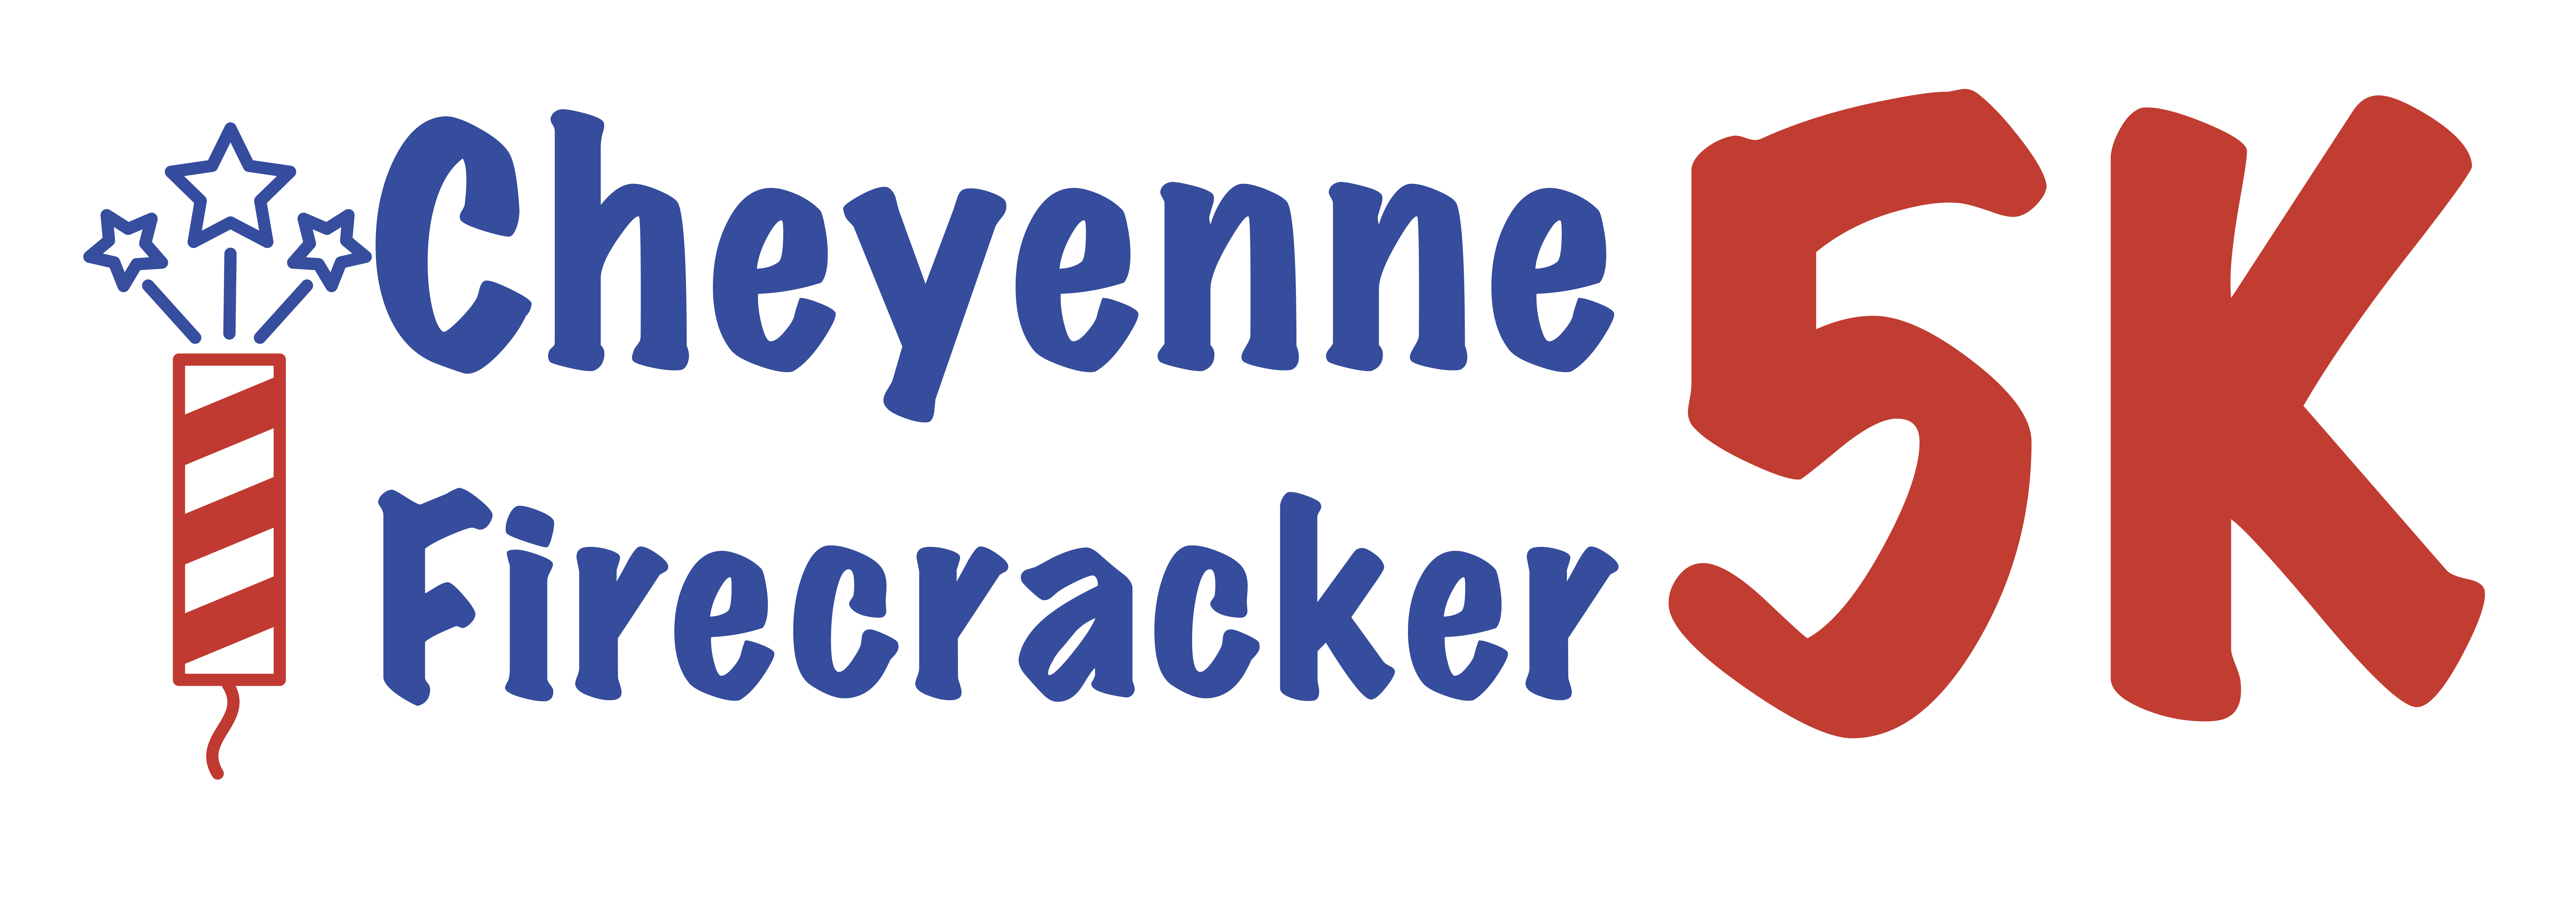 Cheyenne Firecracker 5k